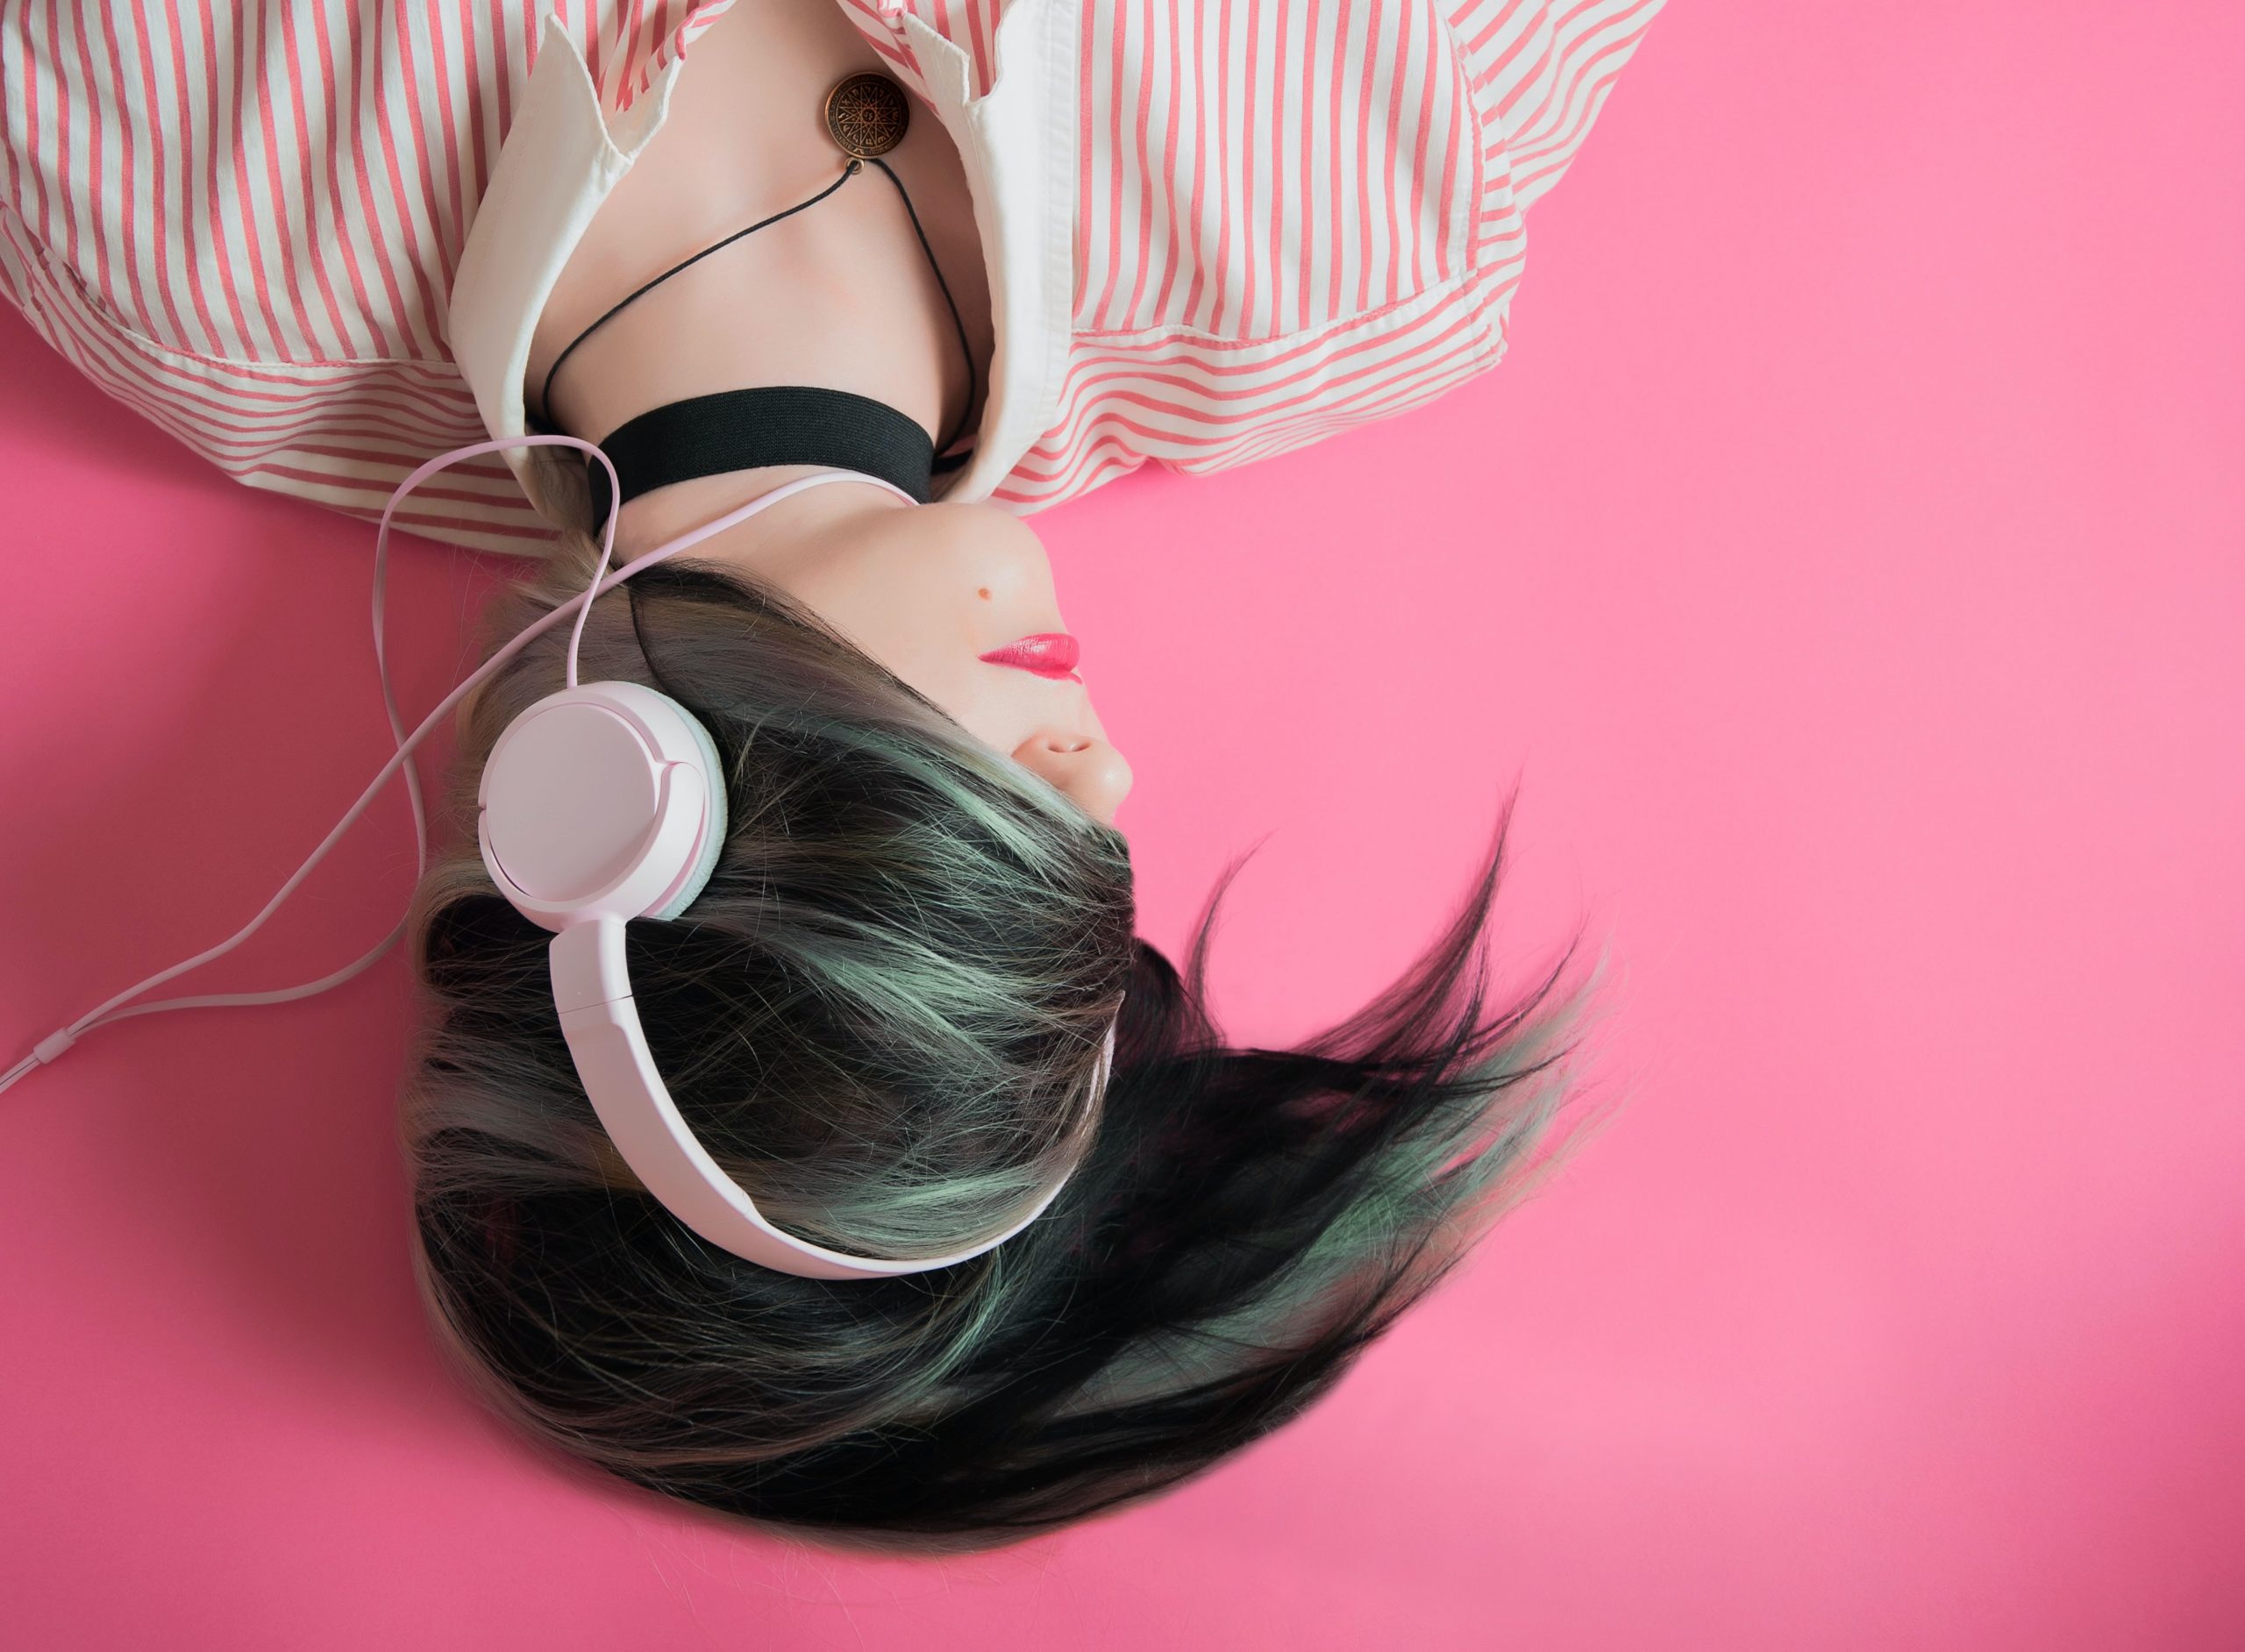 لیست های پخش (playlist) سفارشی ایجاد می کند تا شنوندگان بتوانند از طریق موسیقی، احساسات خود را مدیریت کنند